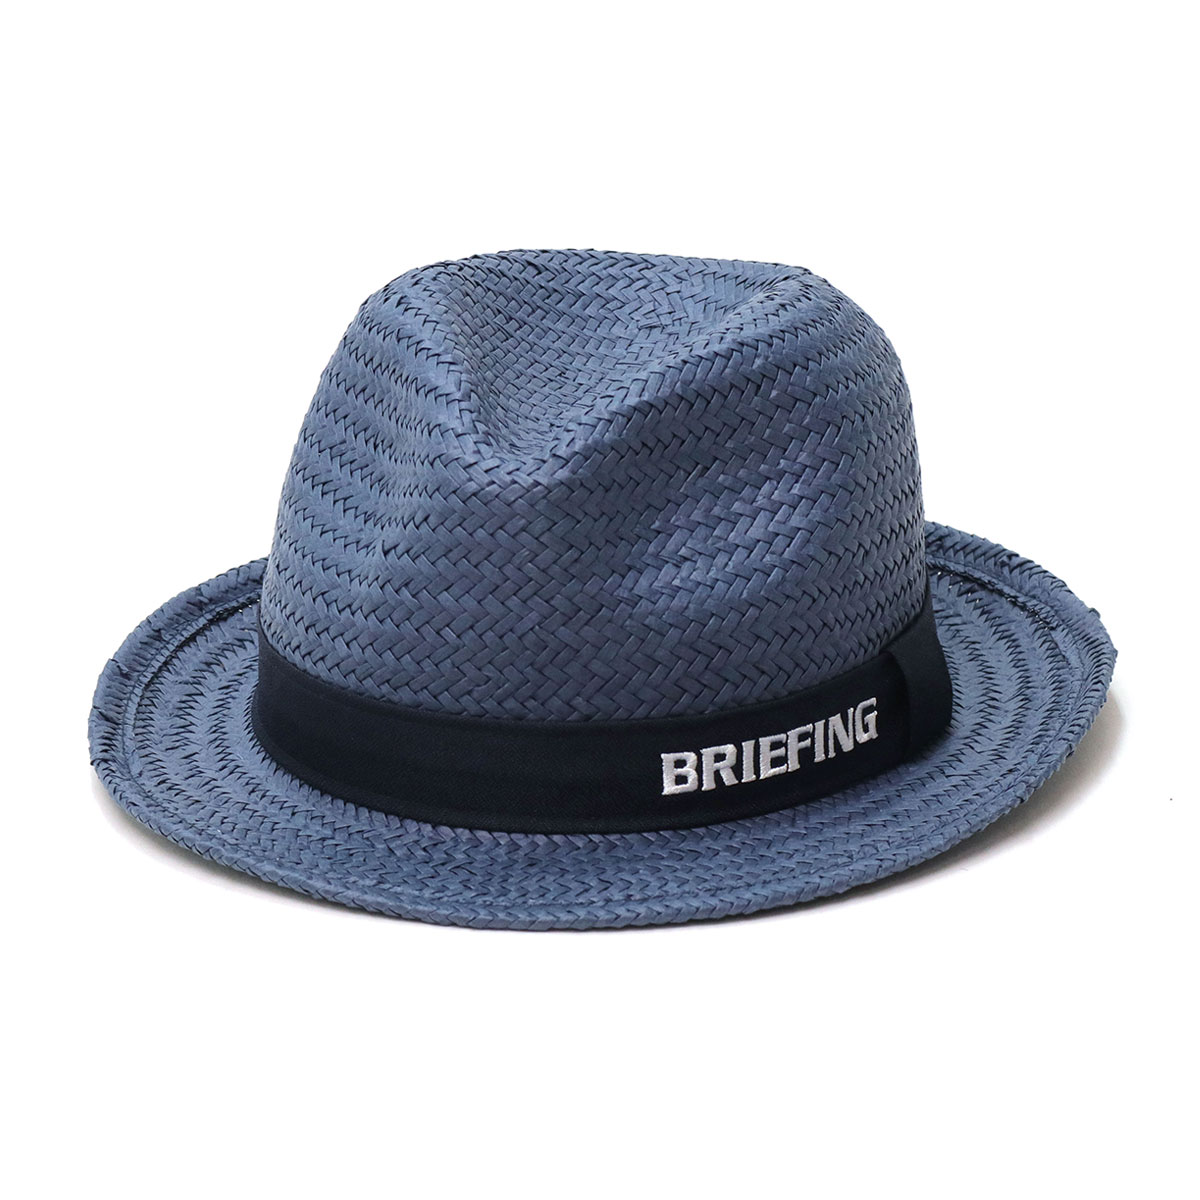 日本正規品 ブリーフィング ゴルフ ストローハット BRIEFING GOLF MENS STRAW HAT 帽子 中折れハット 麦わら帽子 メンズ  BRG231MA3